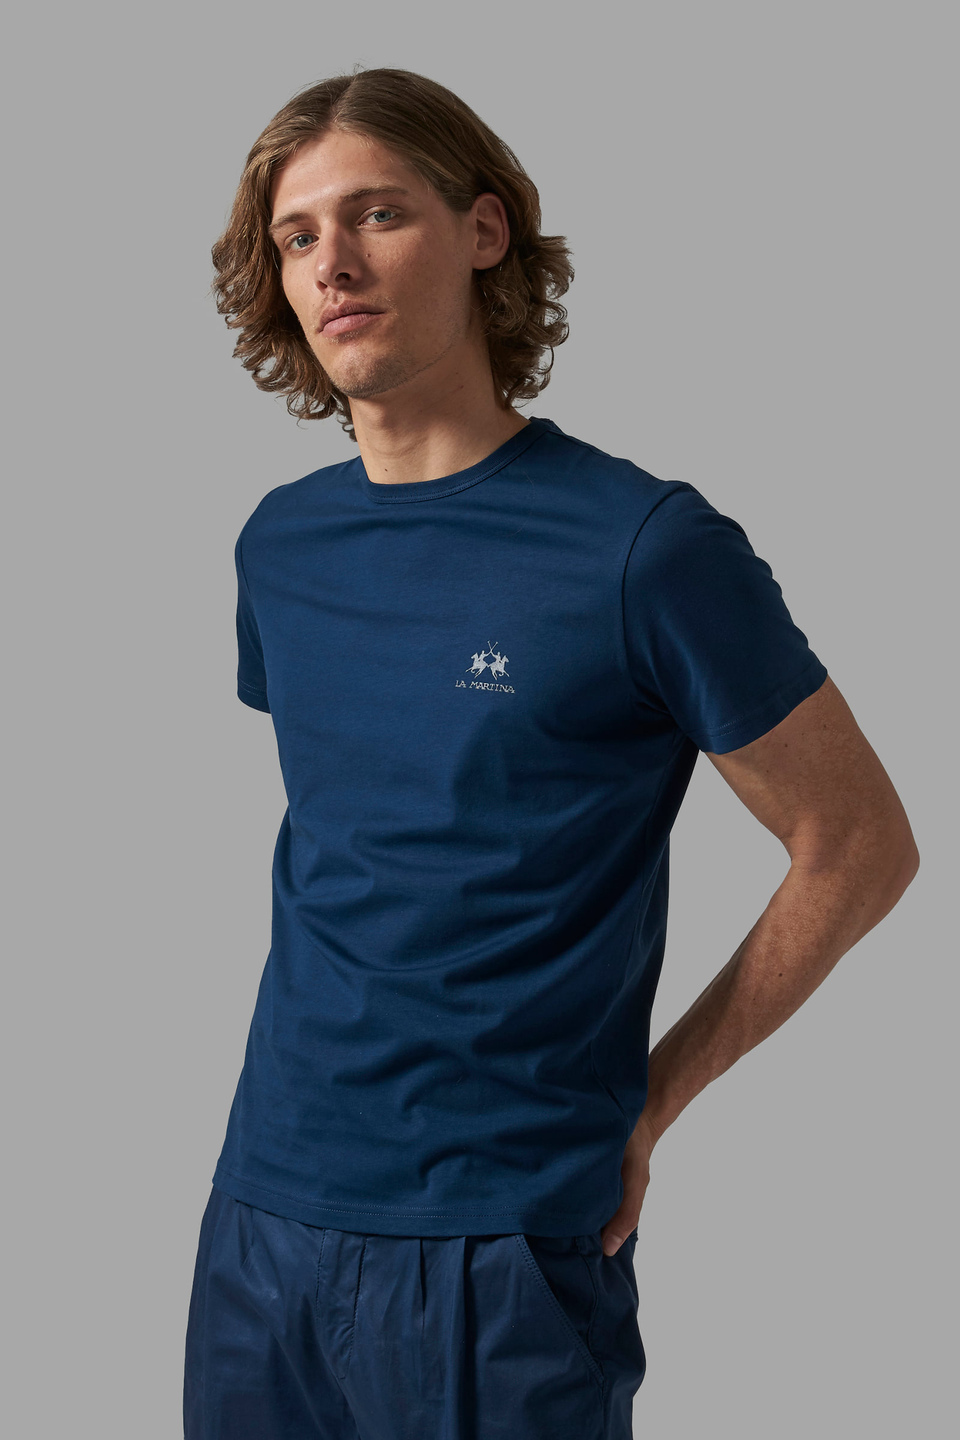 T-shirt homme coupe classique - La Martina - Official Online Shop